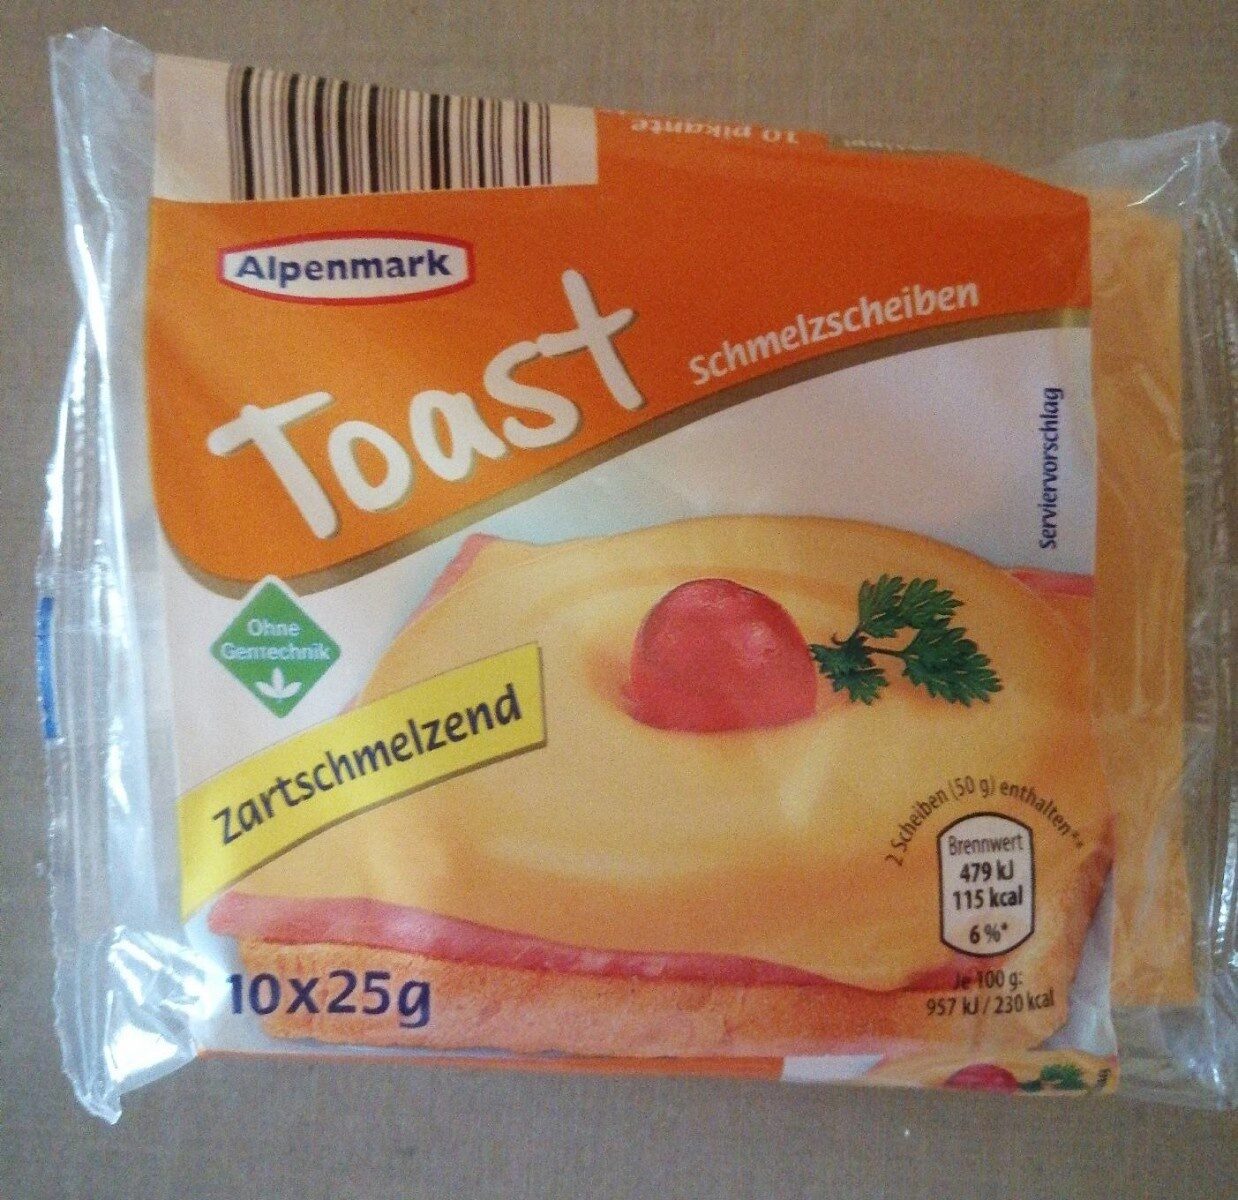 Toast Schmelzscheiben - Product - en